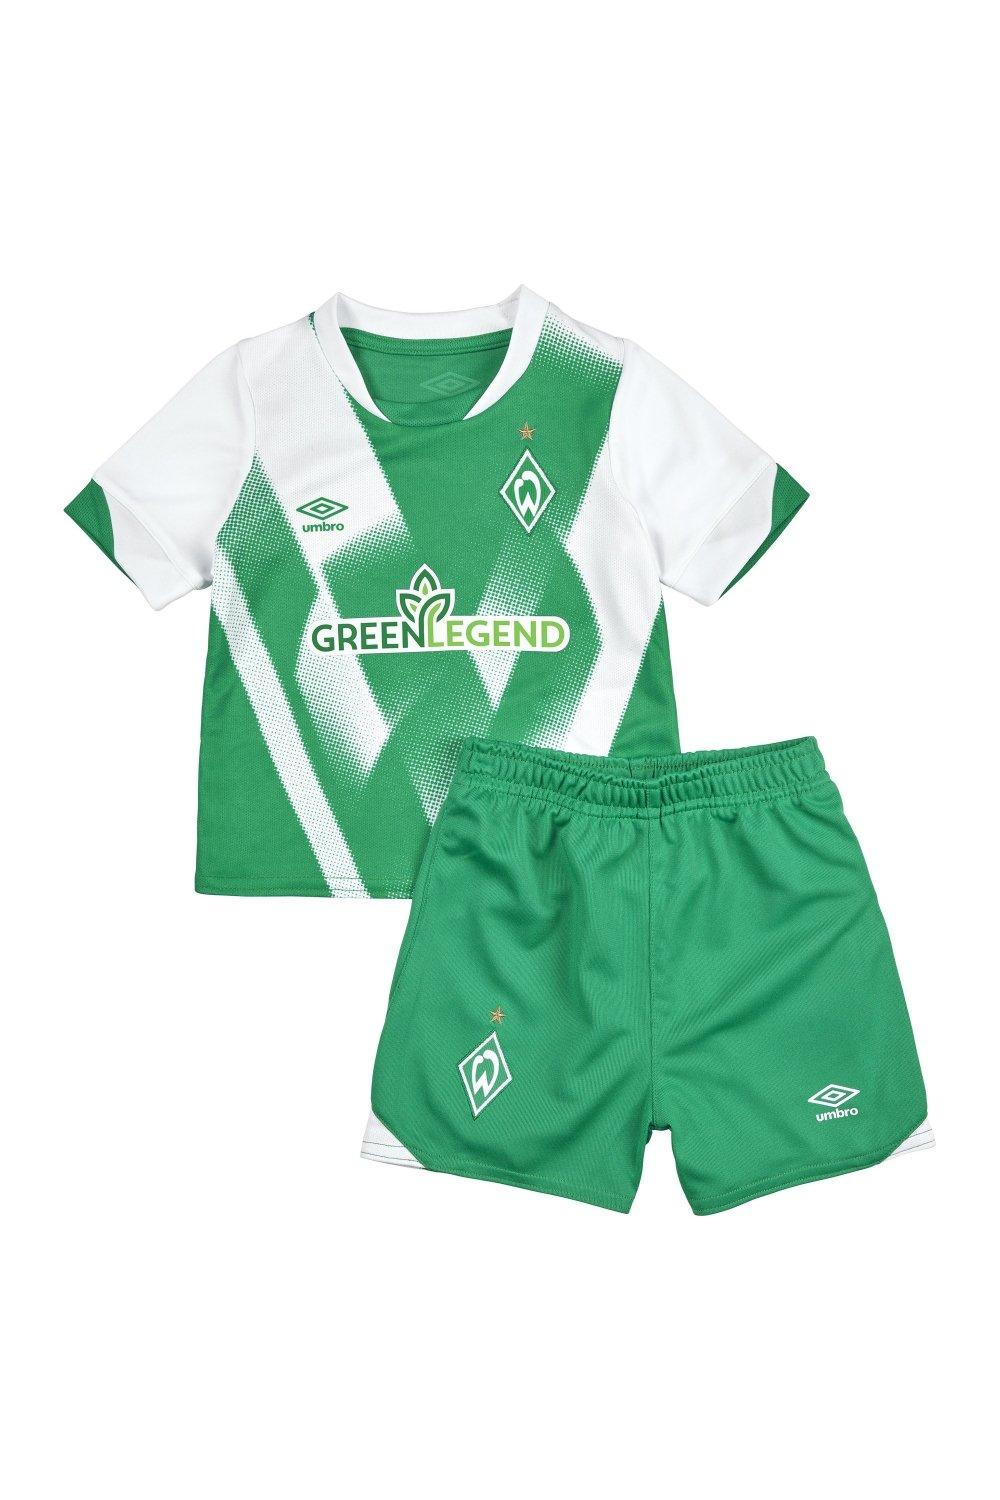 Werder Bremen Home Baby Kit